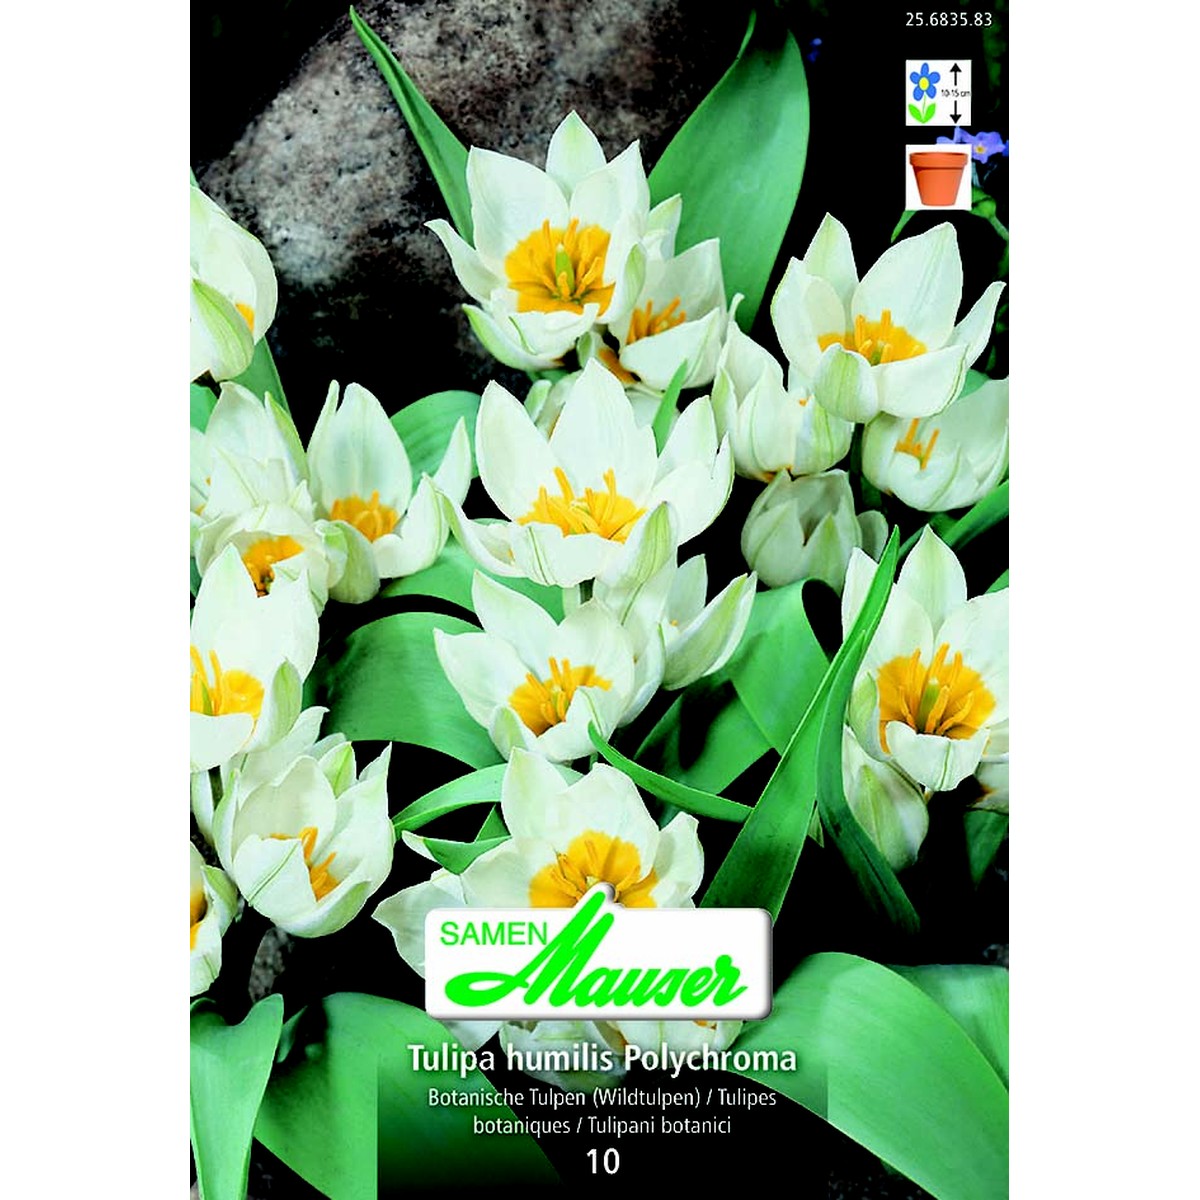   Tulipe botanique hum Polychroma 10  12/